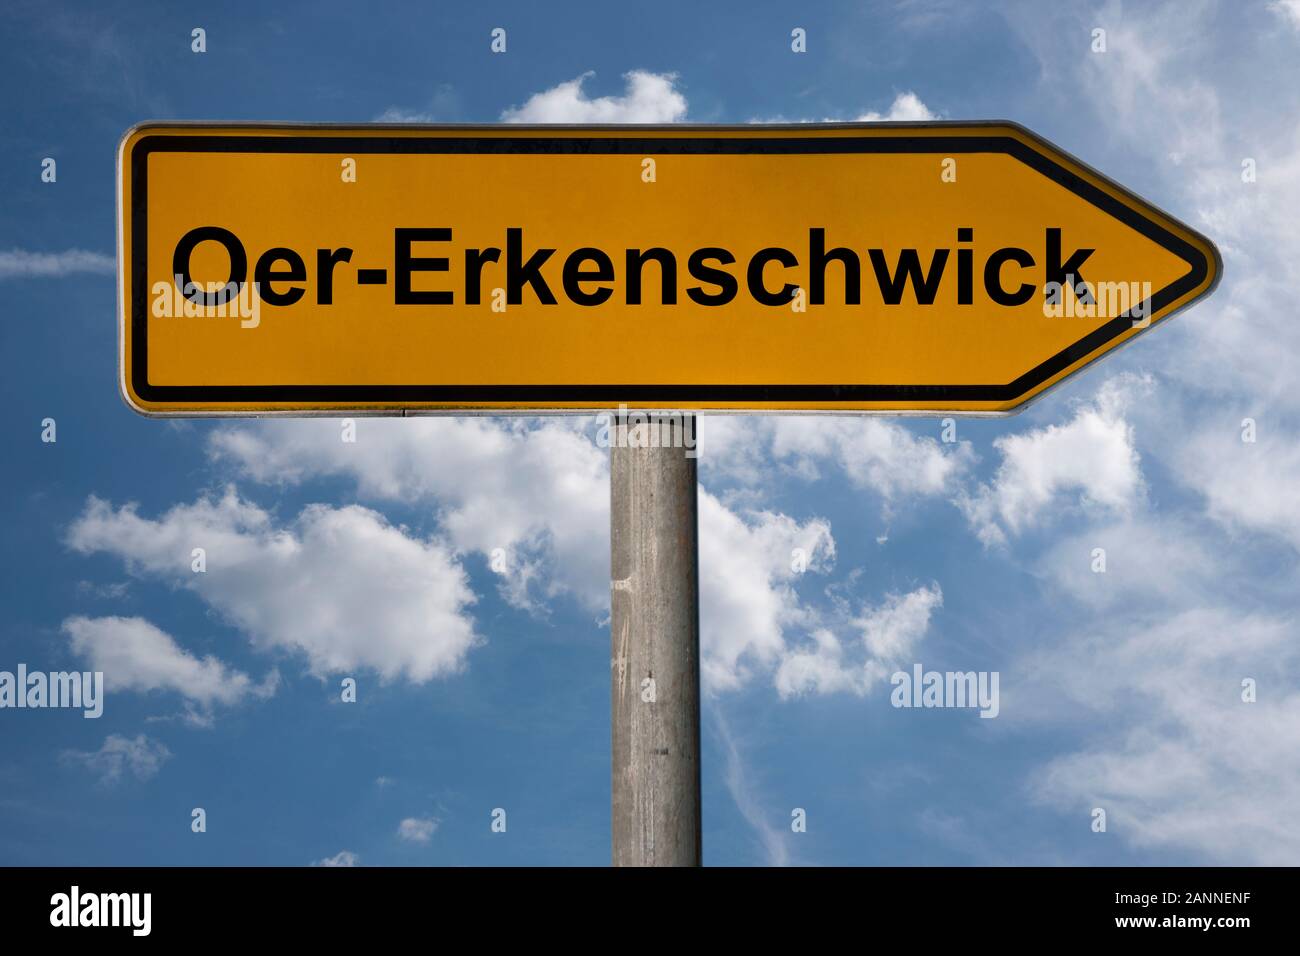 Photo détail d'un panneau avec l'inscription Oer-Erkenschwick, Nordrhein-Westfalen, Germany, Europe Banque D'Images